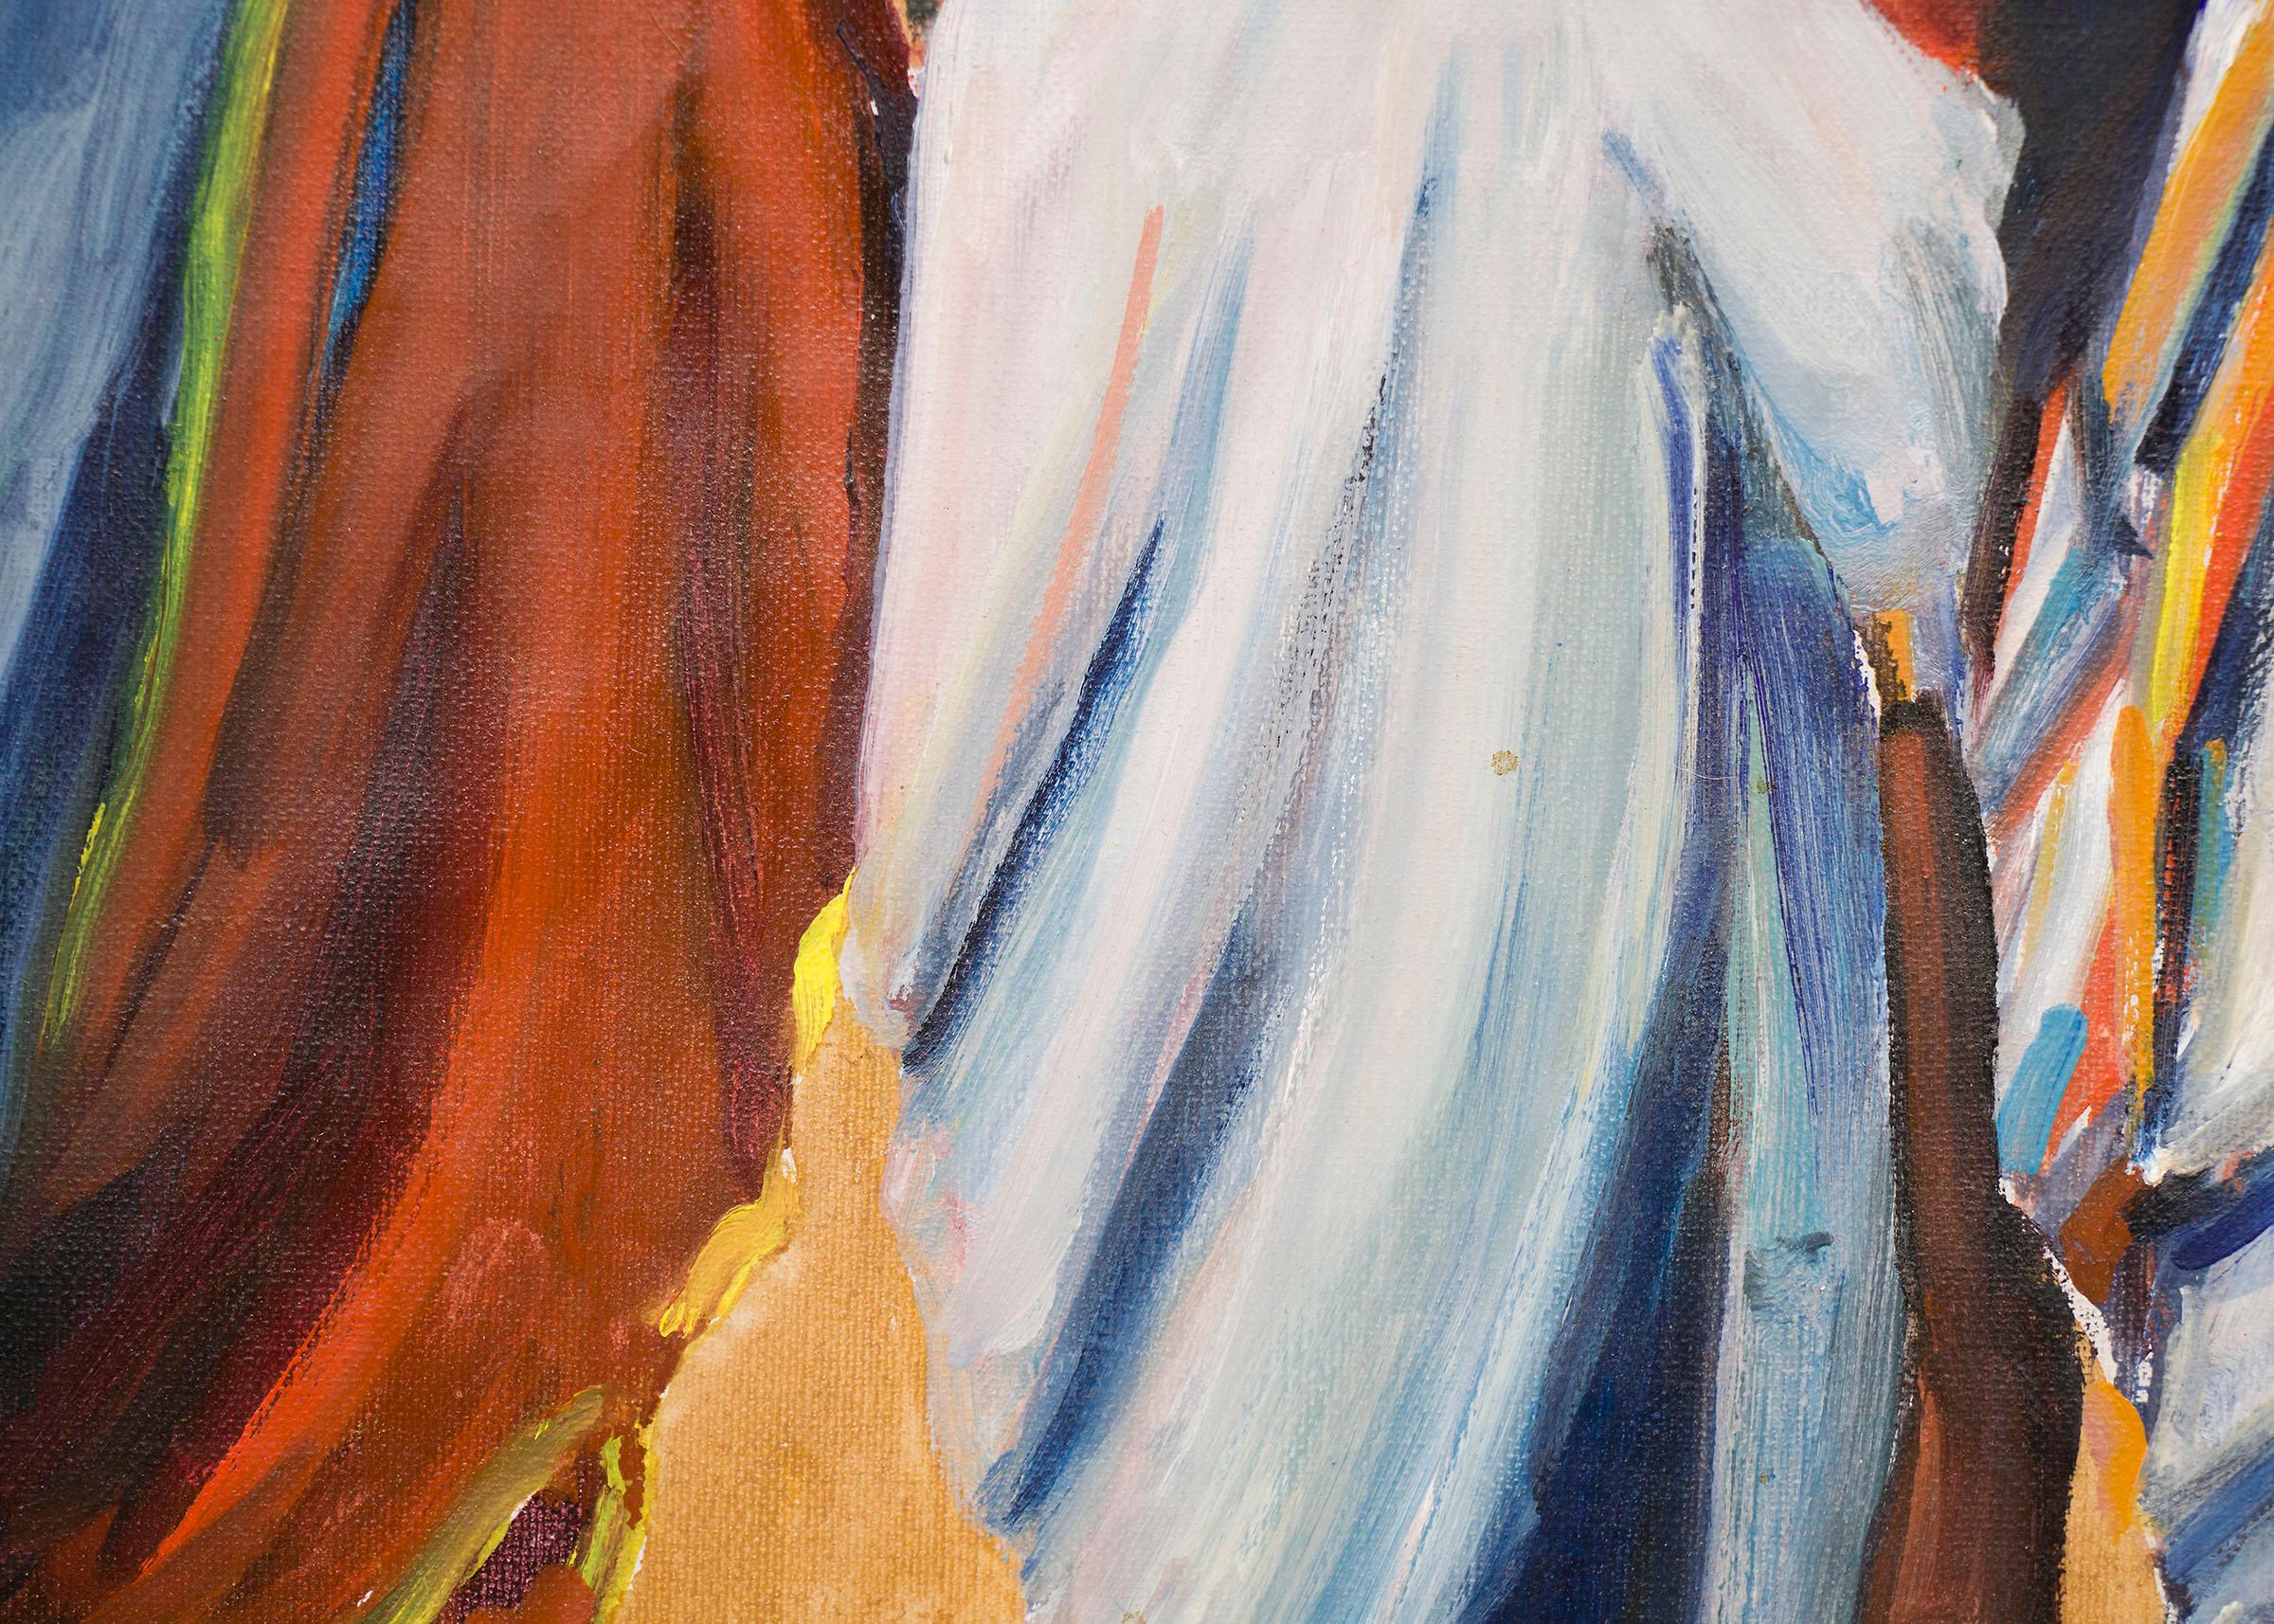 Original-Ölgemälde von Wolfgang Pogzeba (1936-1982) aus dem 20. Jahrhundert mit indianischen Figuren in hellen Decken und Lehmbauten im Hintergrund in Taos Pueblo, New Mexico.   Präsentiert in einem individuellen Hartholzrahmen, Außenmaße messen 24